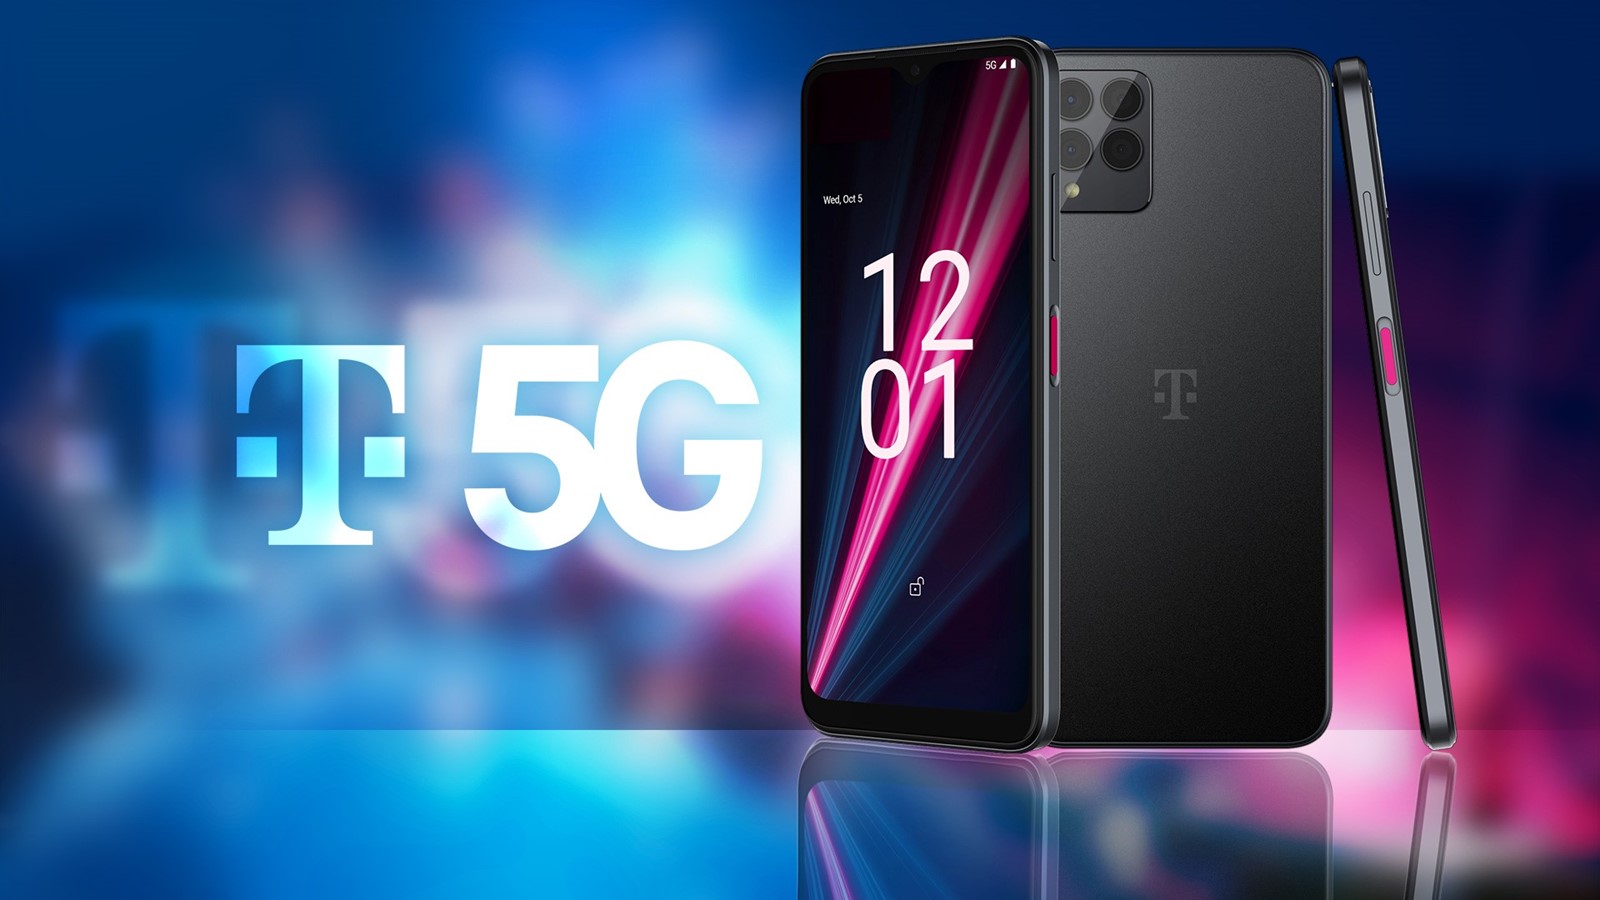 5G mobiteli Hrvatskog Telekoma, T Phone i T Phone Pro, su u prodaji -  Mobiteli @ Bug.hr